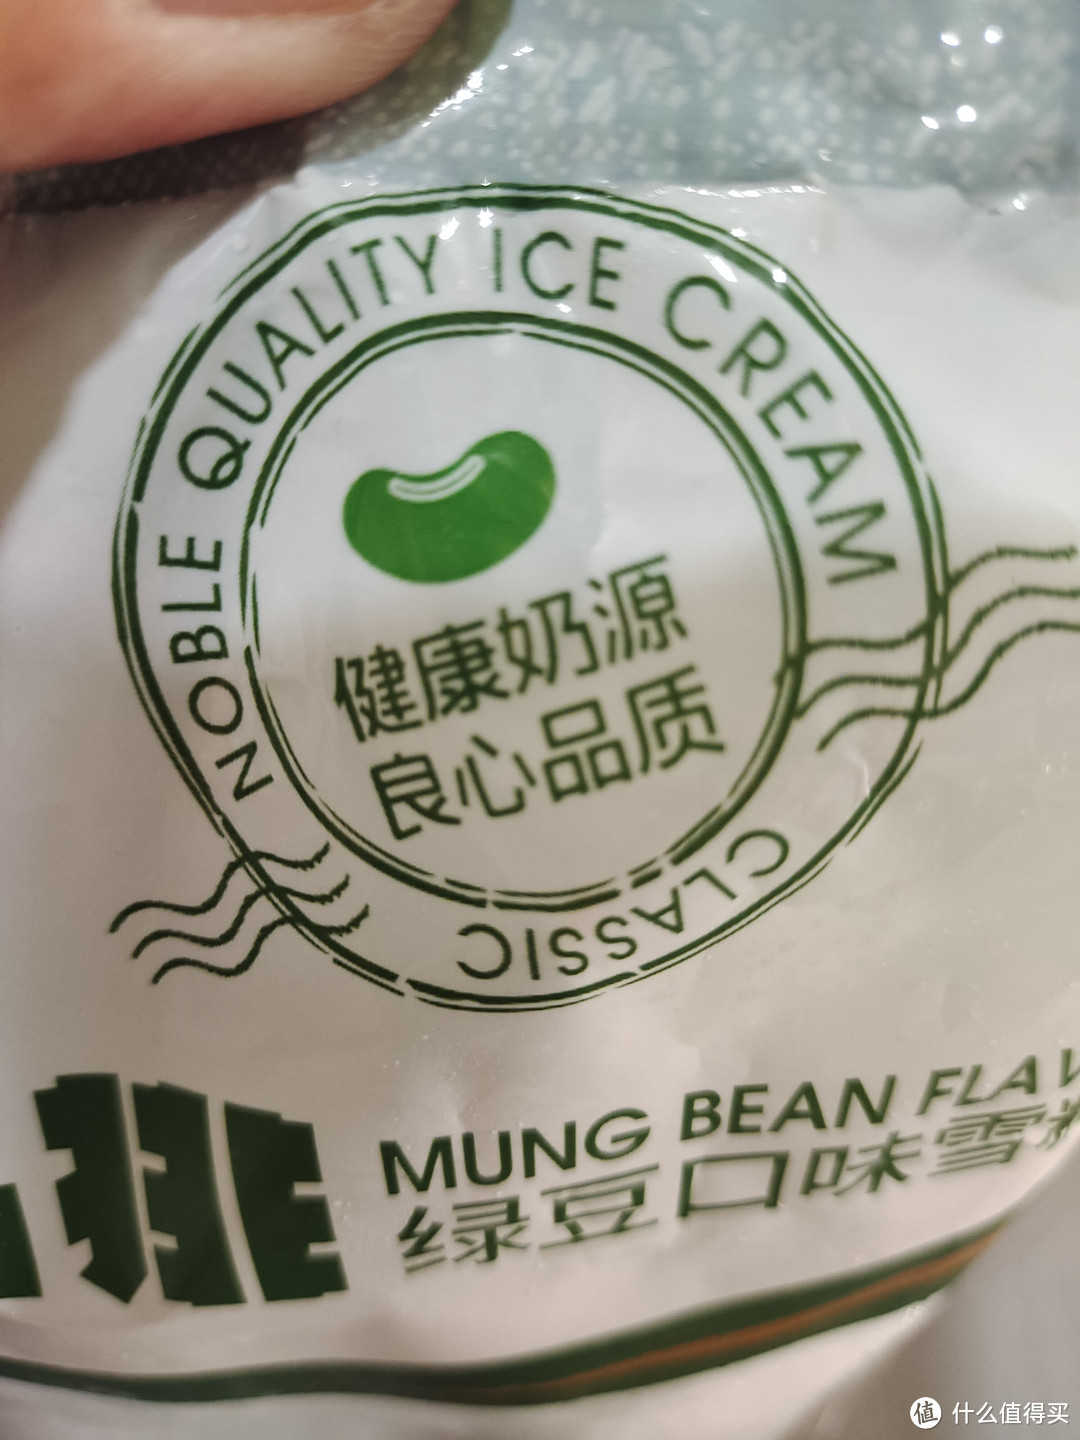 炎热的夏天怎么少的了好吃的绿豆冰棍呢